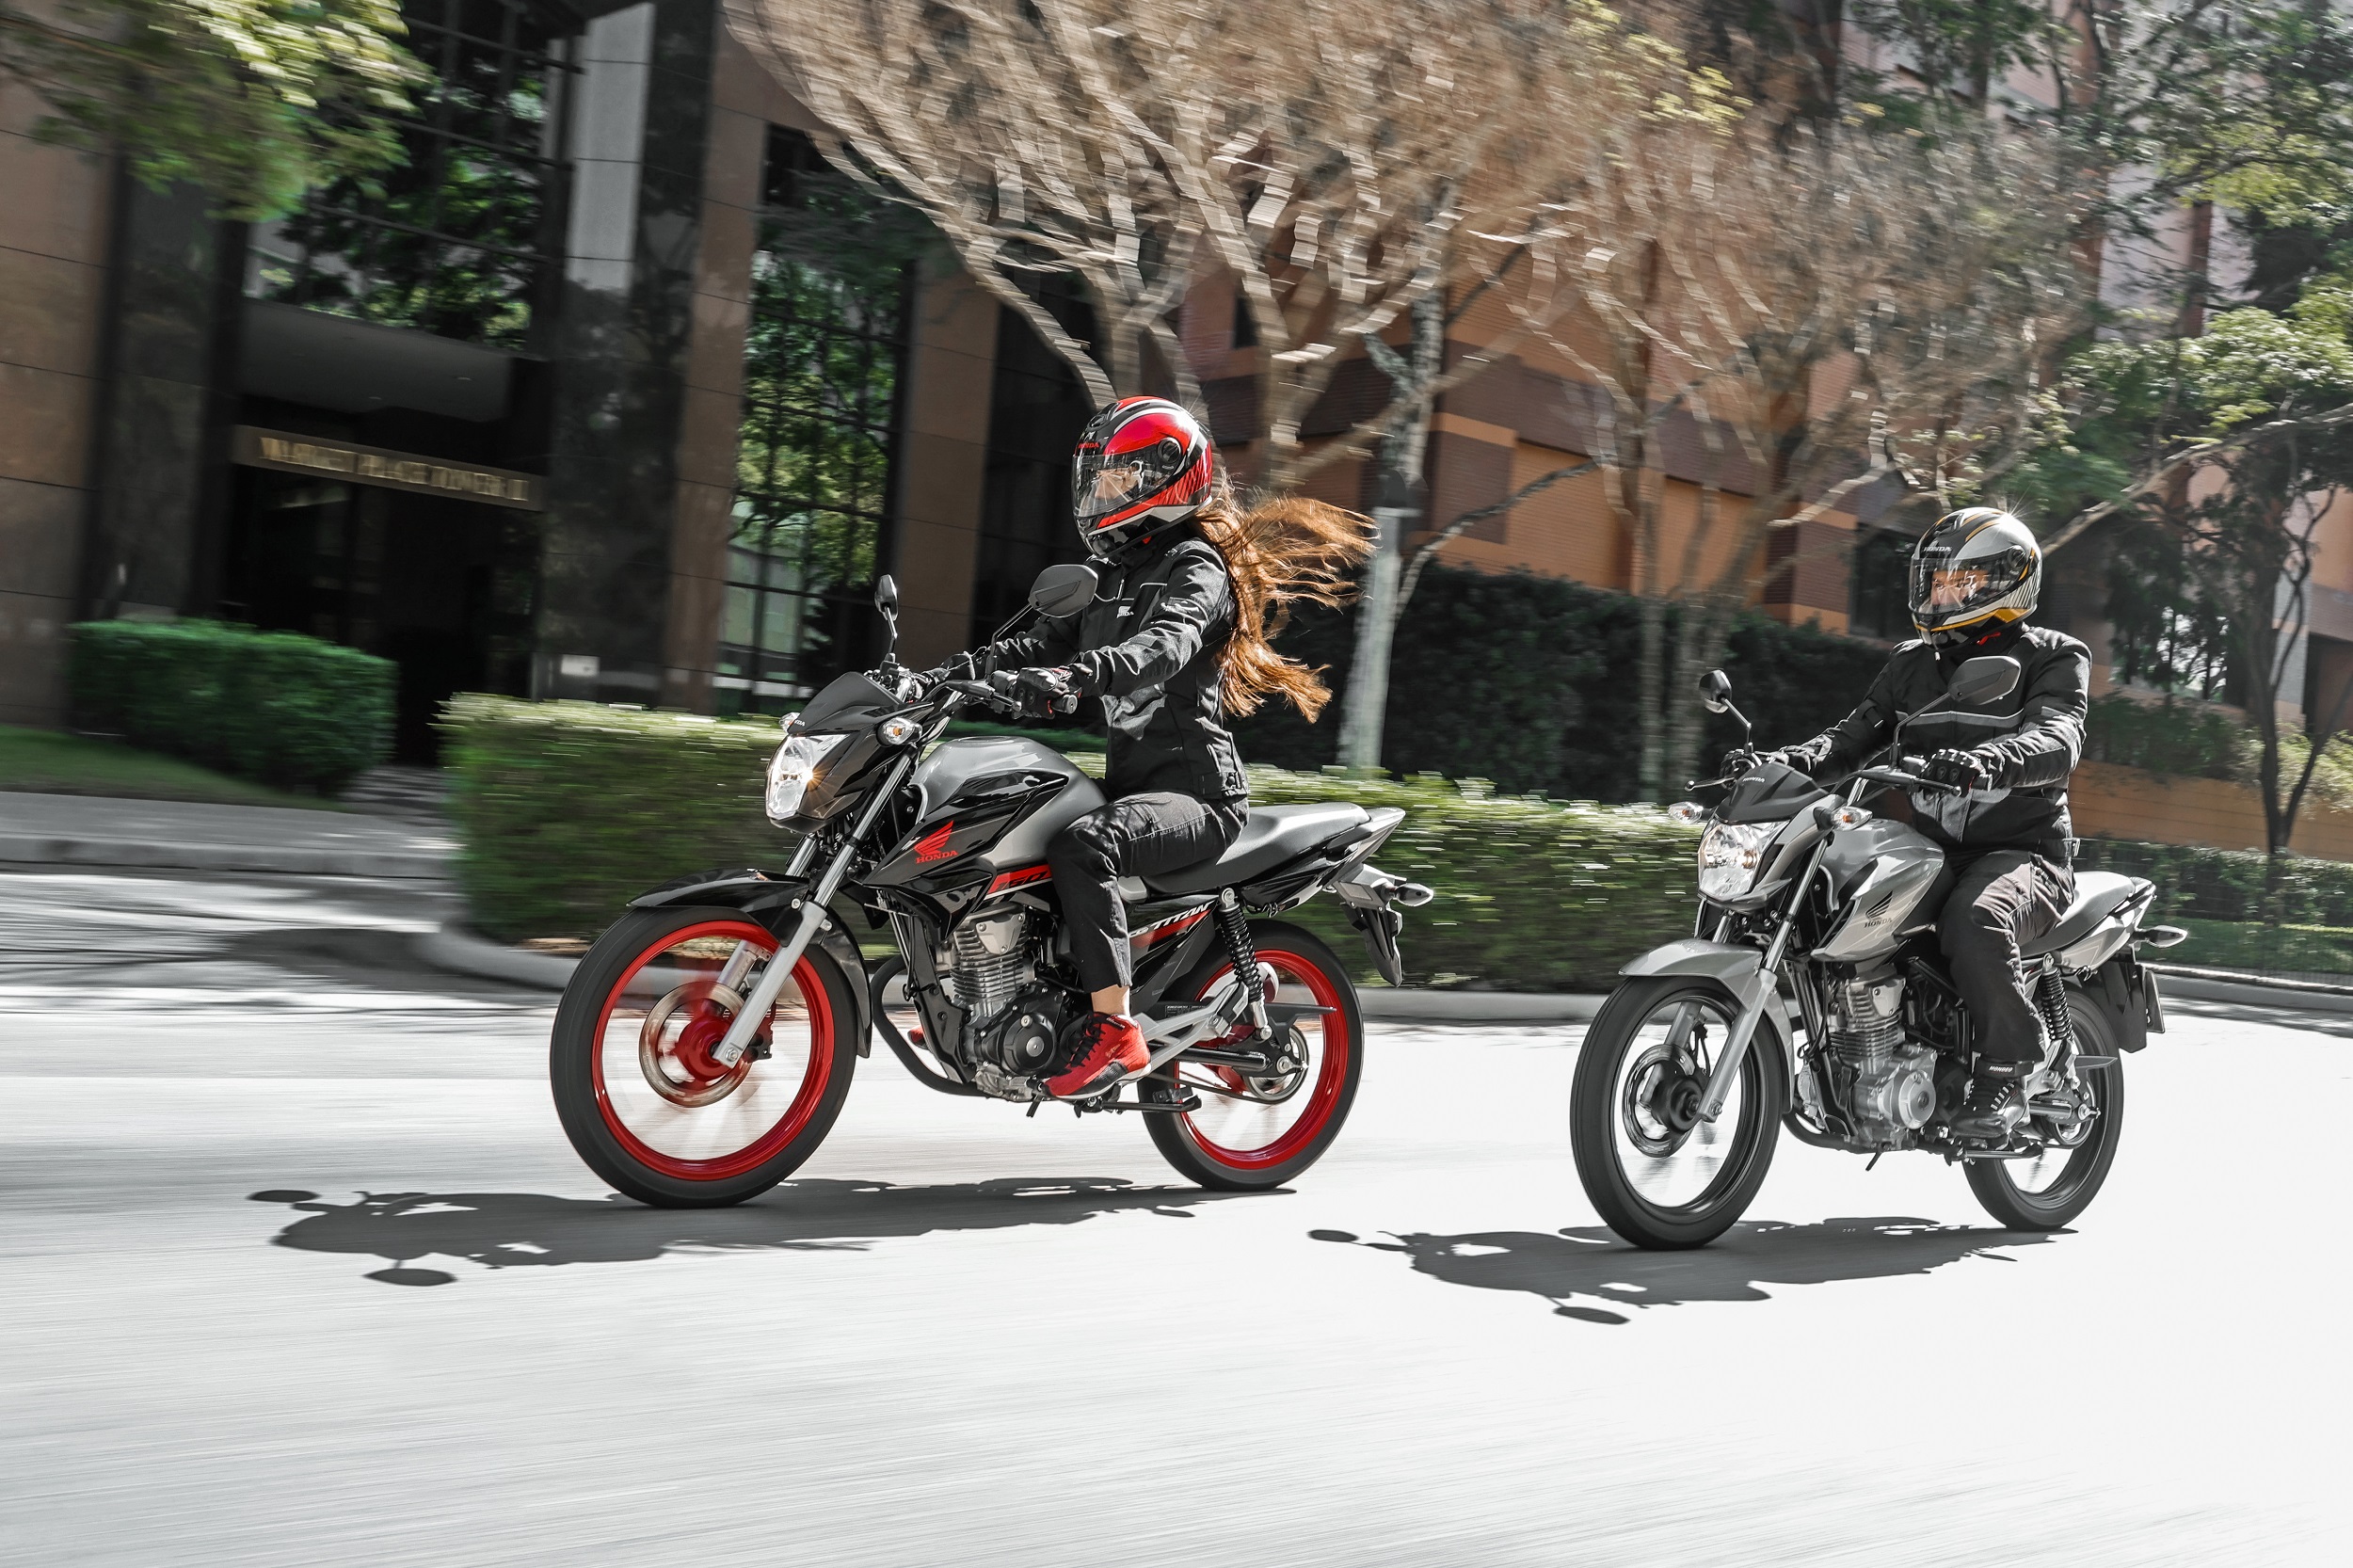 De Honda a Mottu: as motos mais vendidas do Brasil em outubro